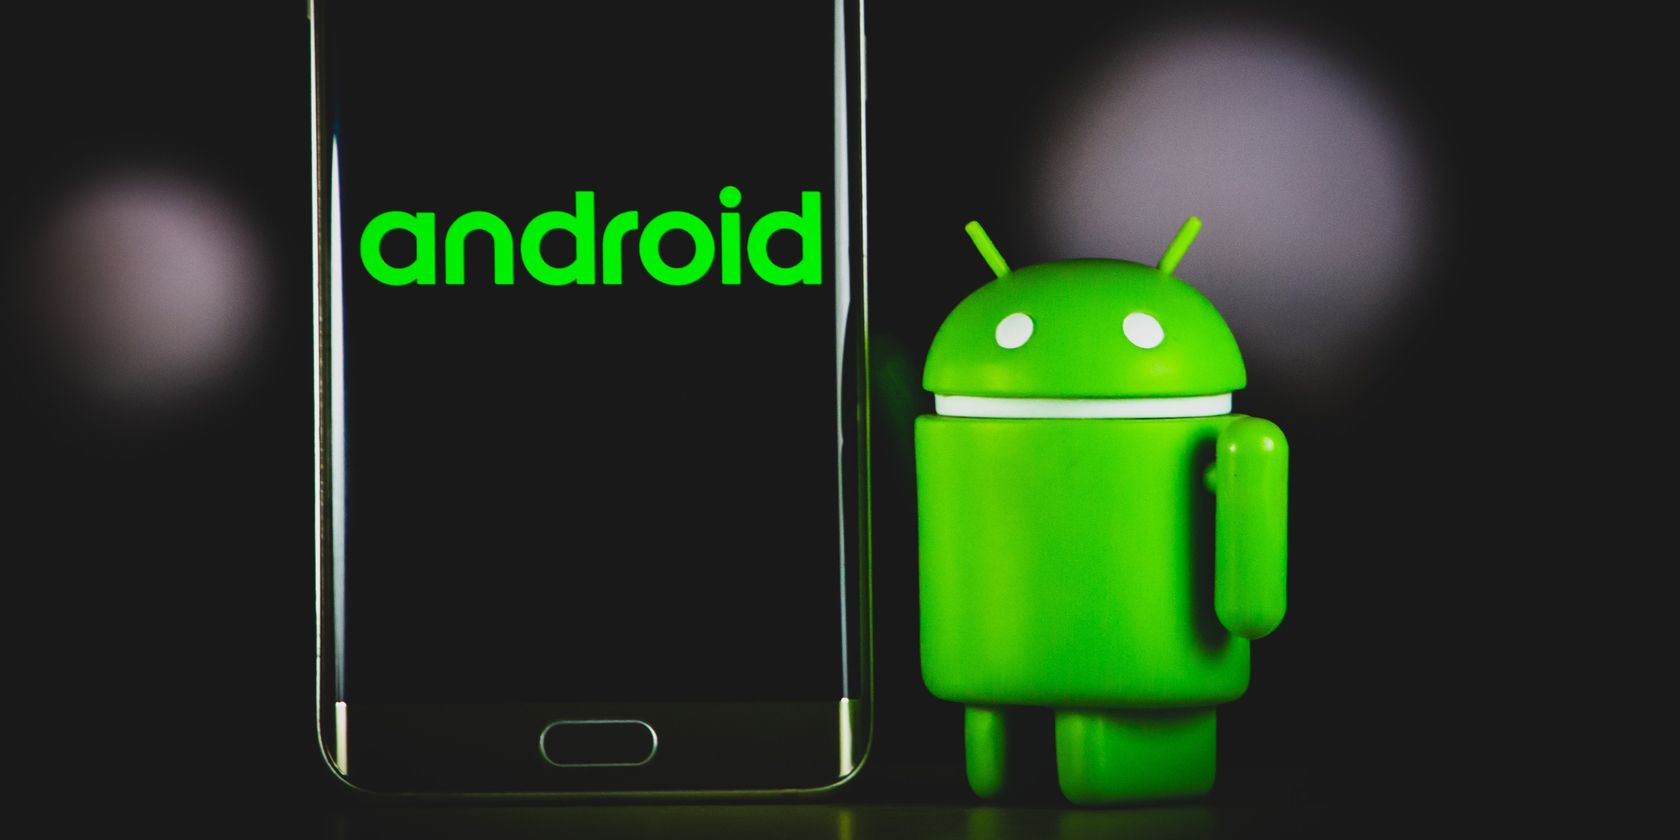 Android Berdiri di Samping Layar Smartphone Menampilkan teks android